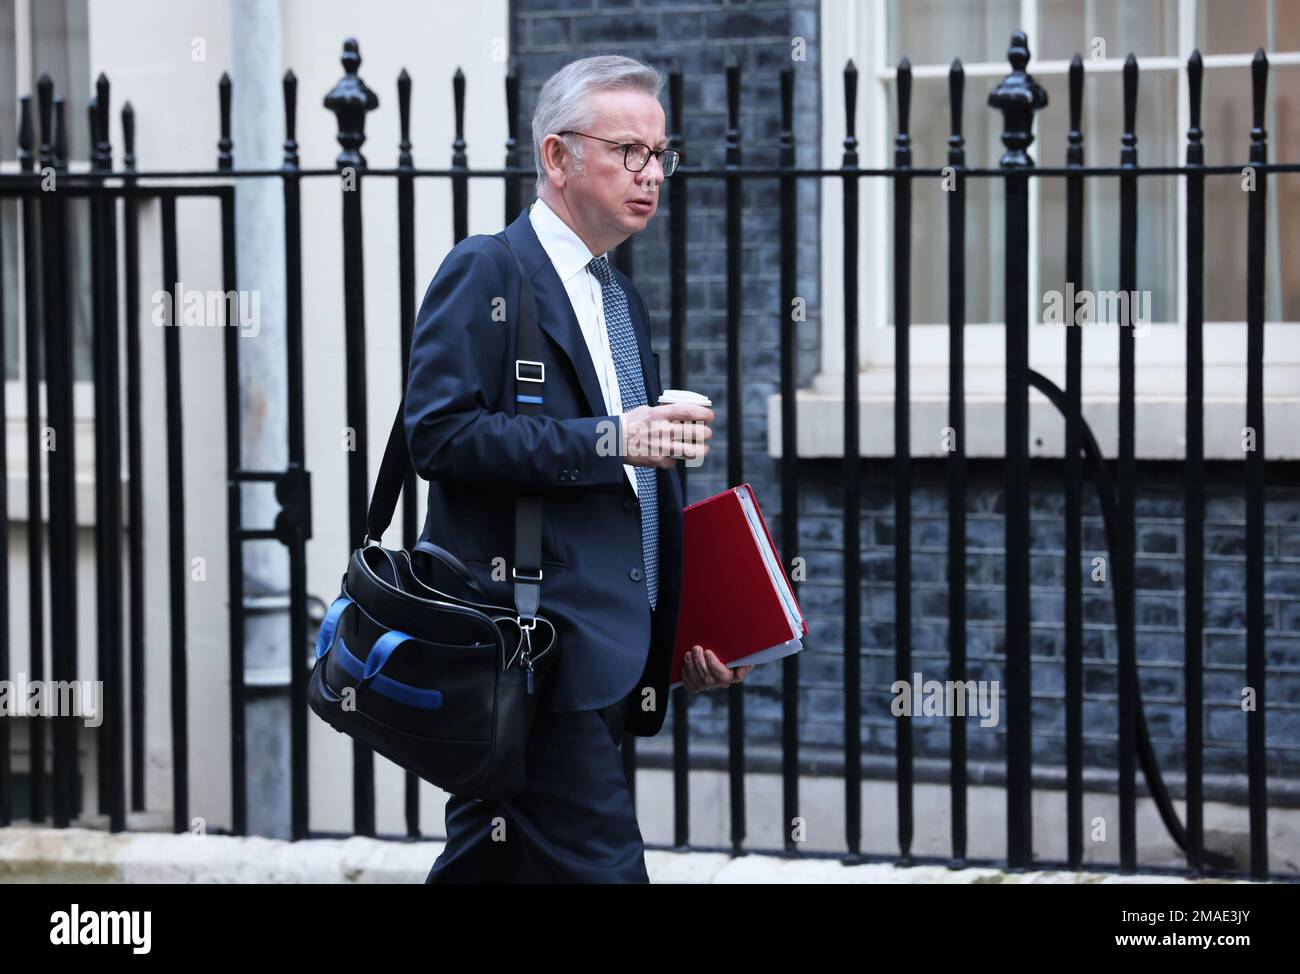 Michael Gove, secrétaire d'État au ministère de la mise à niveau, du logement et des communautés, sur Downing Street, Londres, Royaume-Uni Banque D'Images